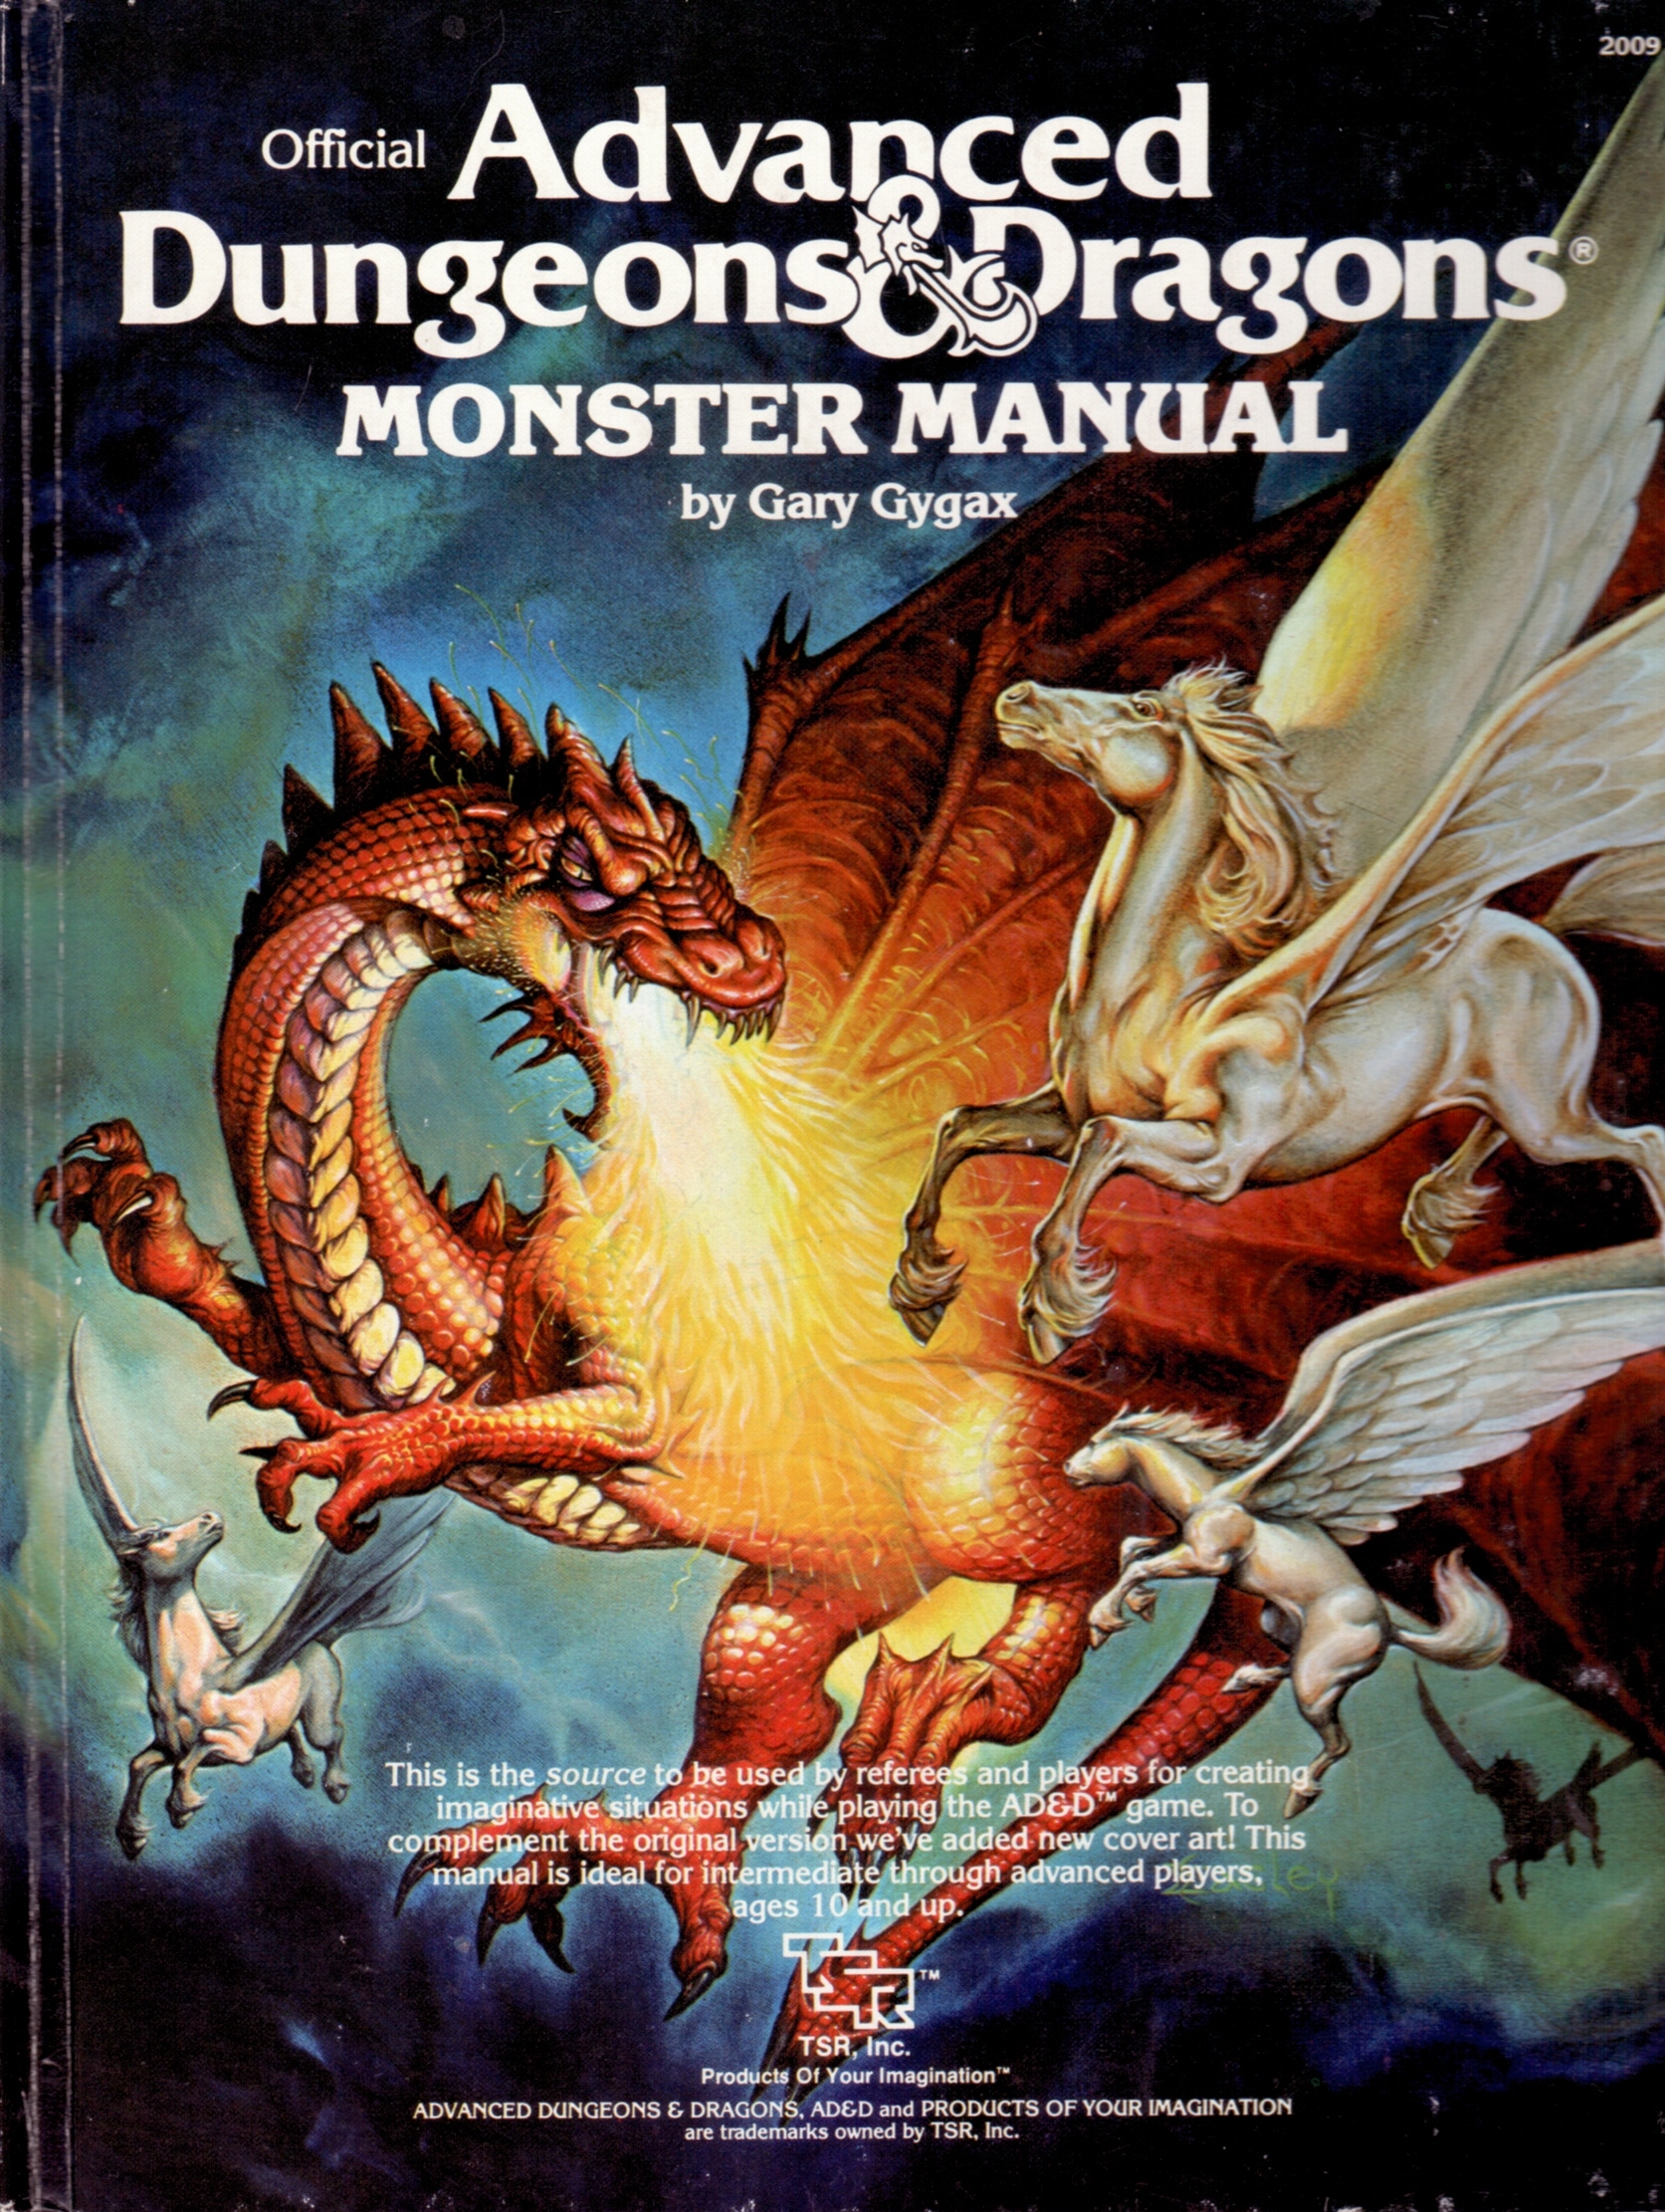 donjons et dragons 4 pdf free